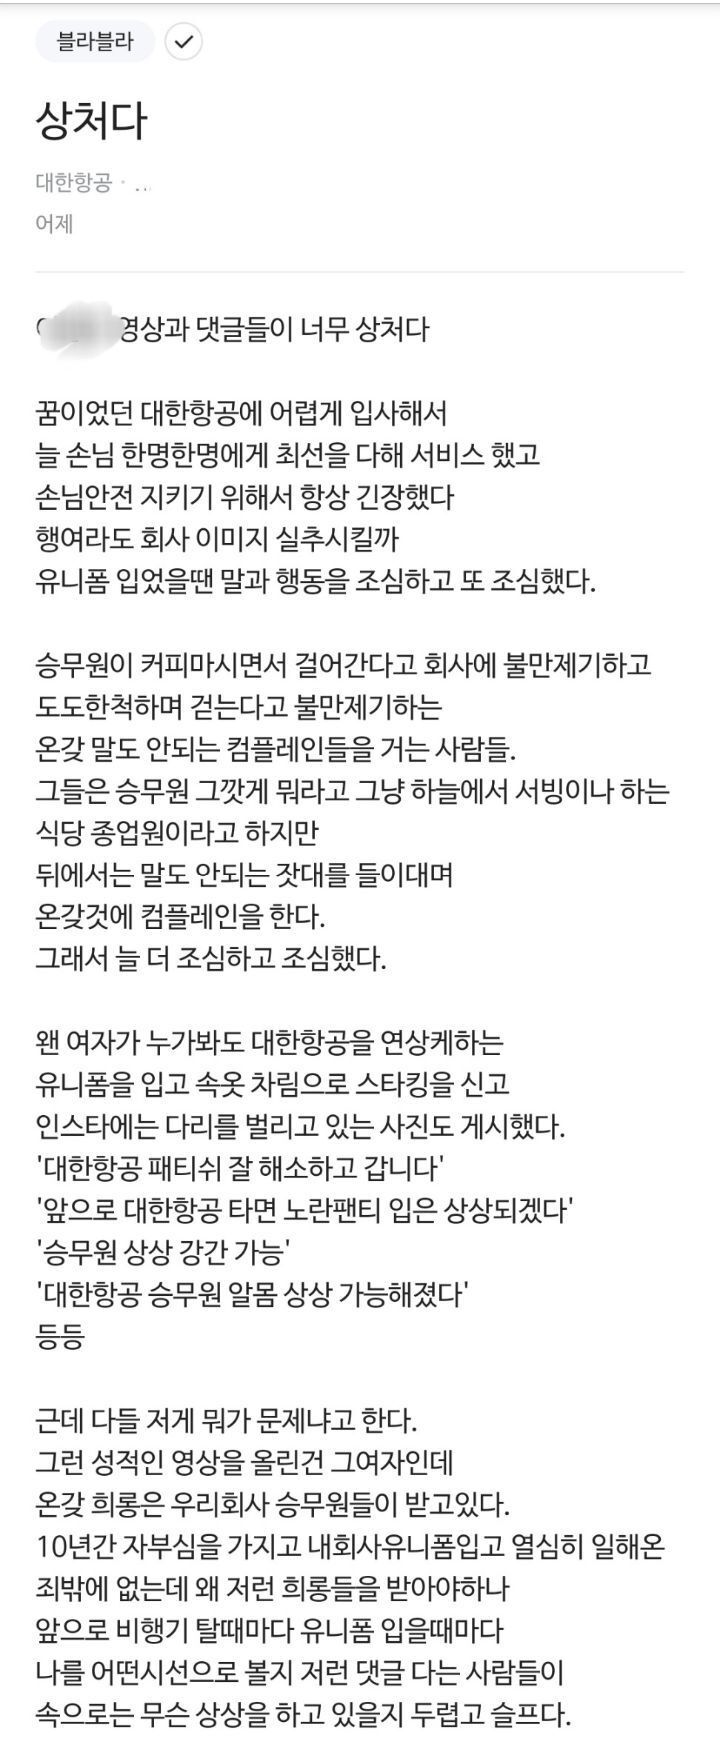 ルックブックYouTuber報告 大韓航空職員が掲載したブラインド書き込み